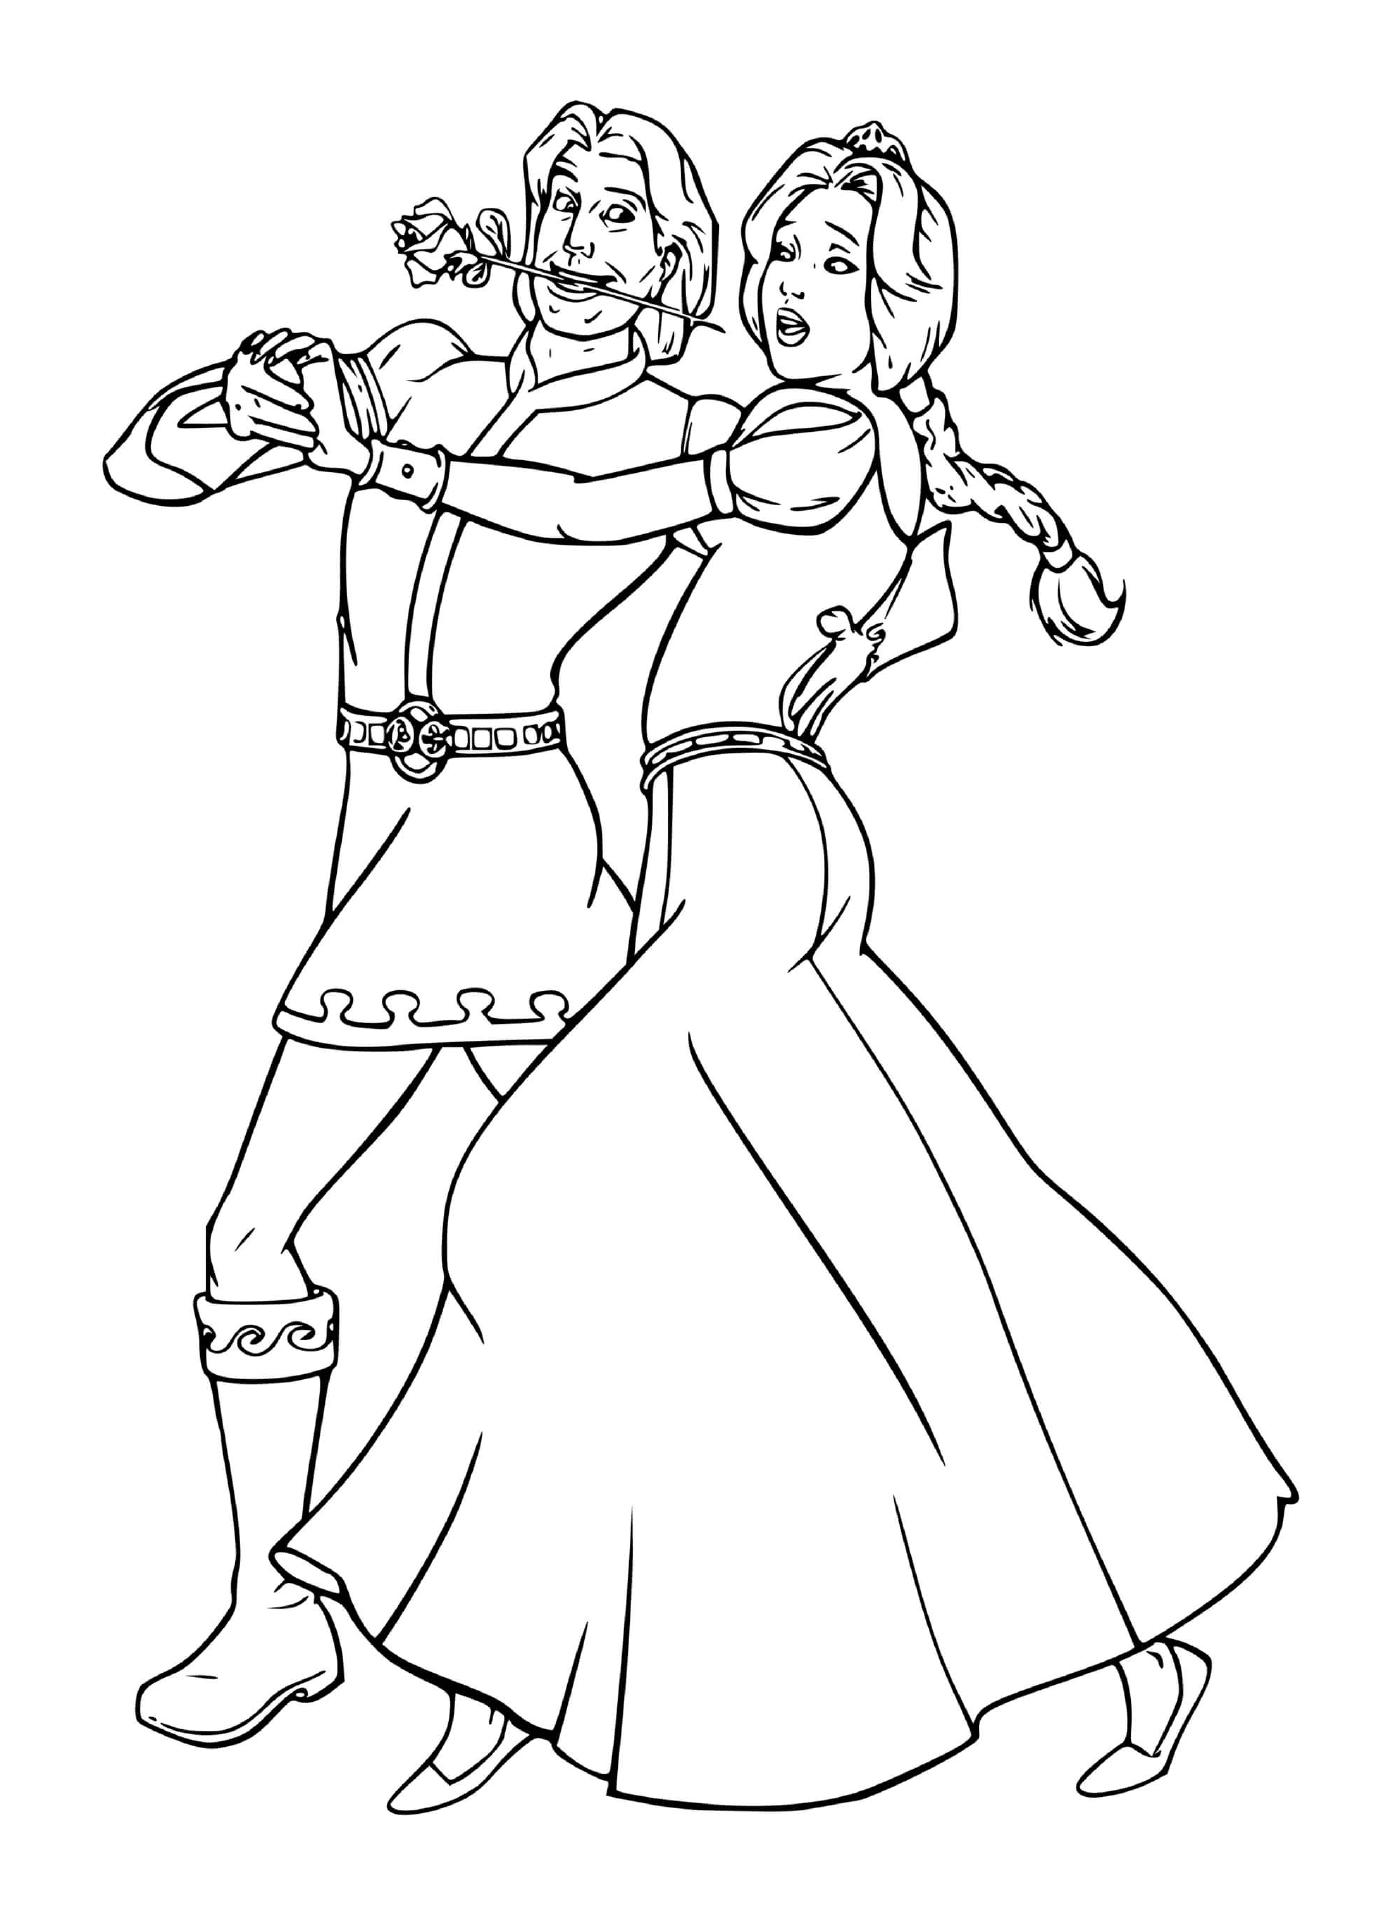 Fiona et Charmant dansent